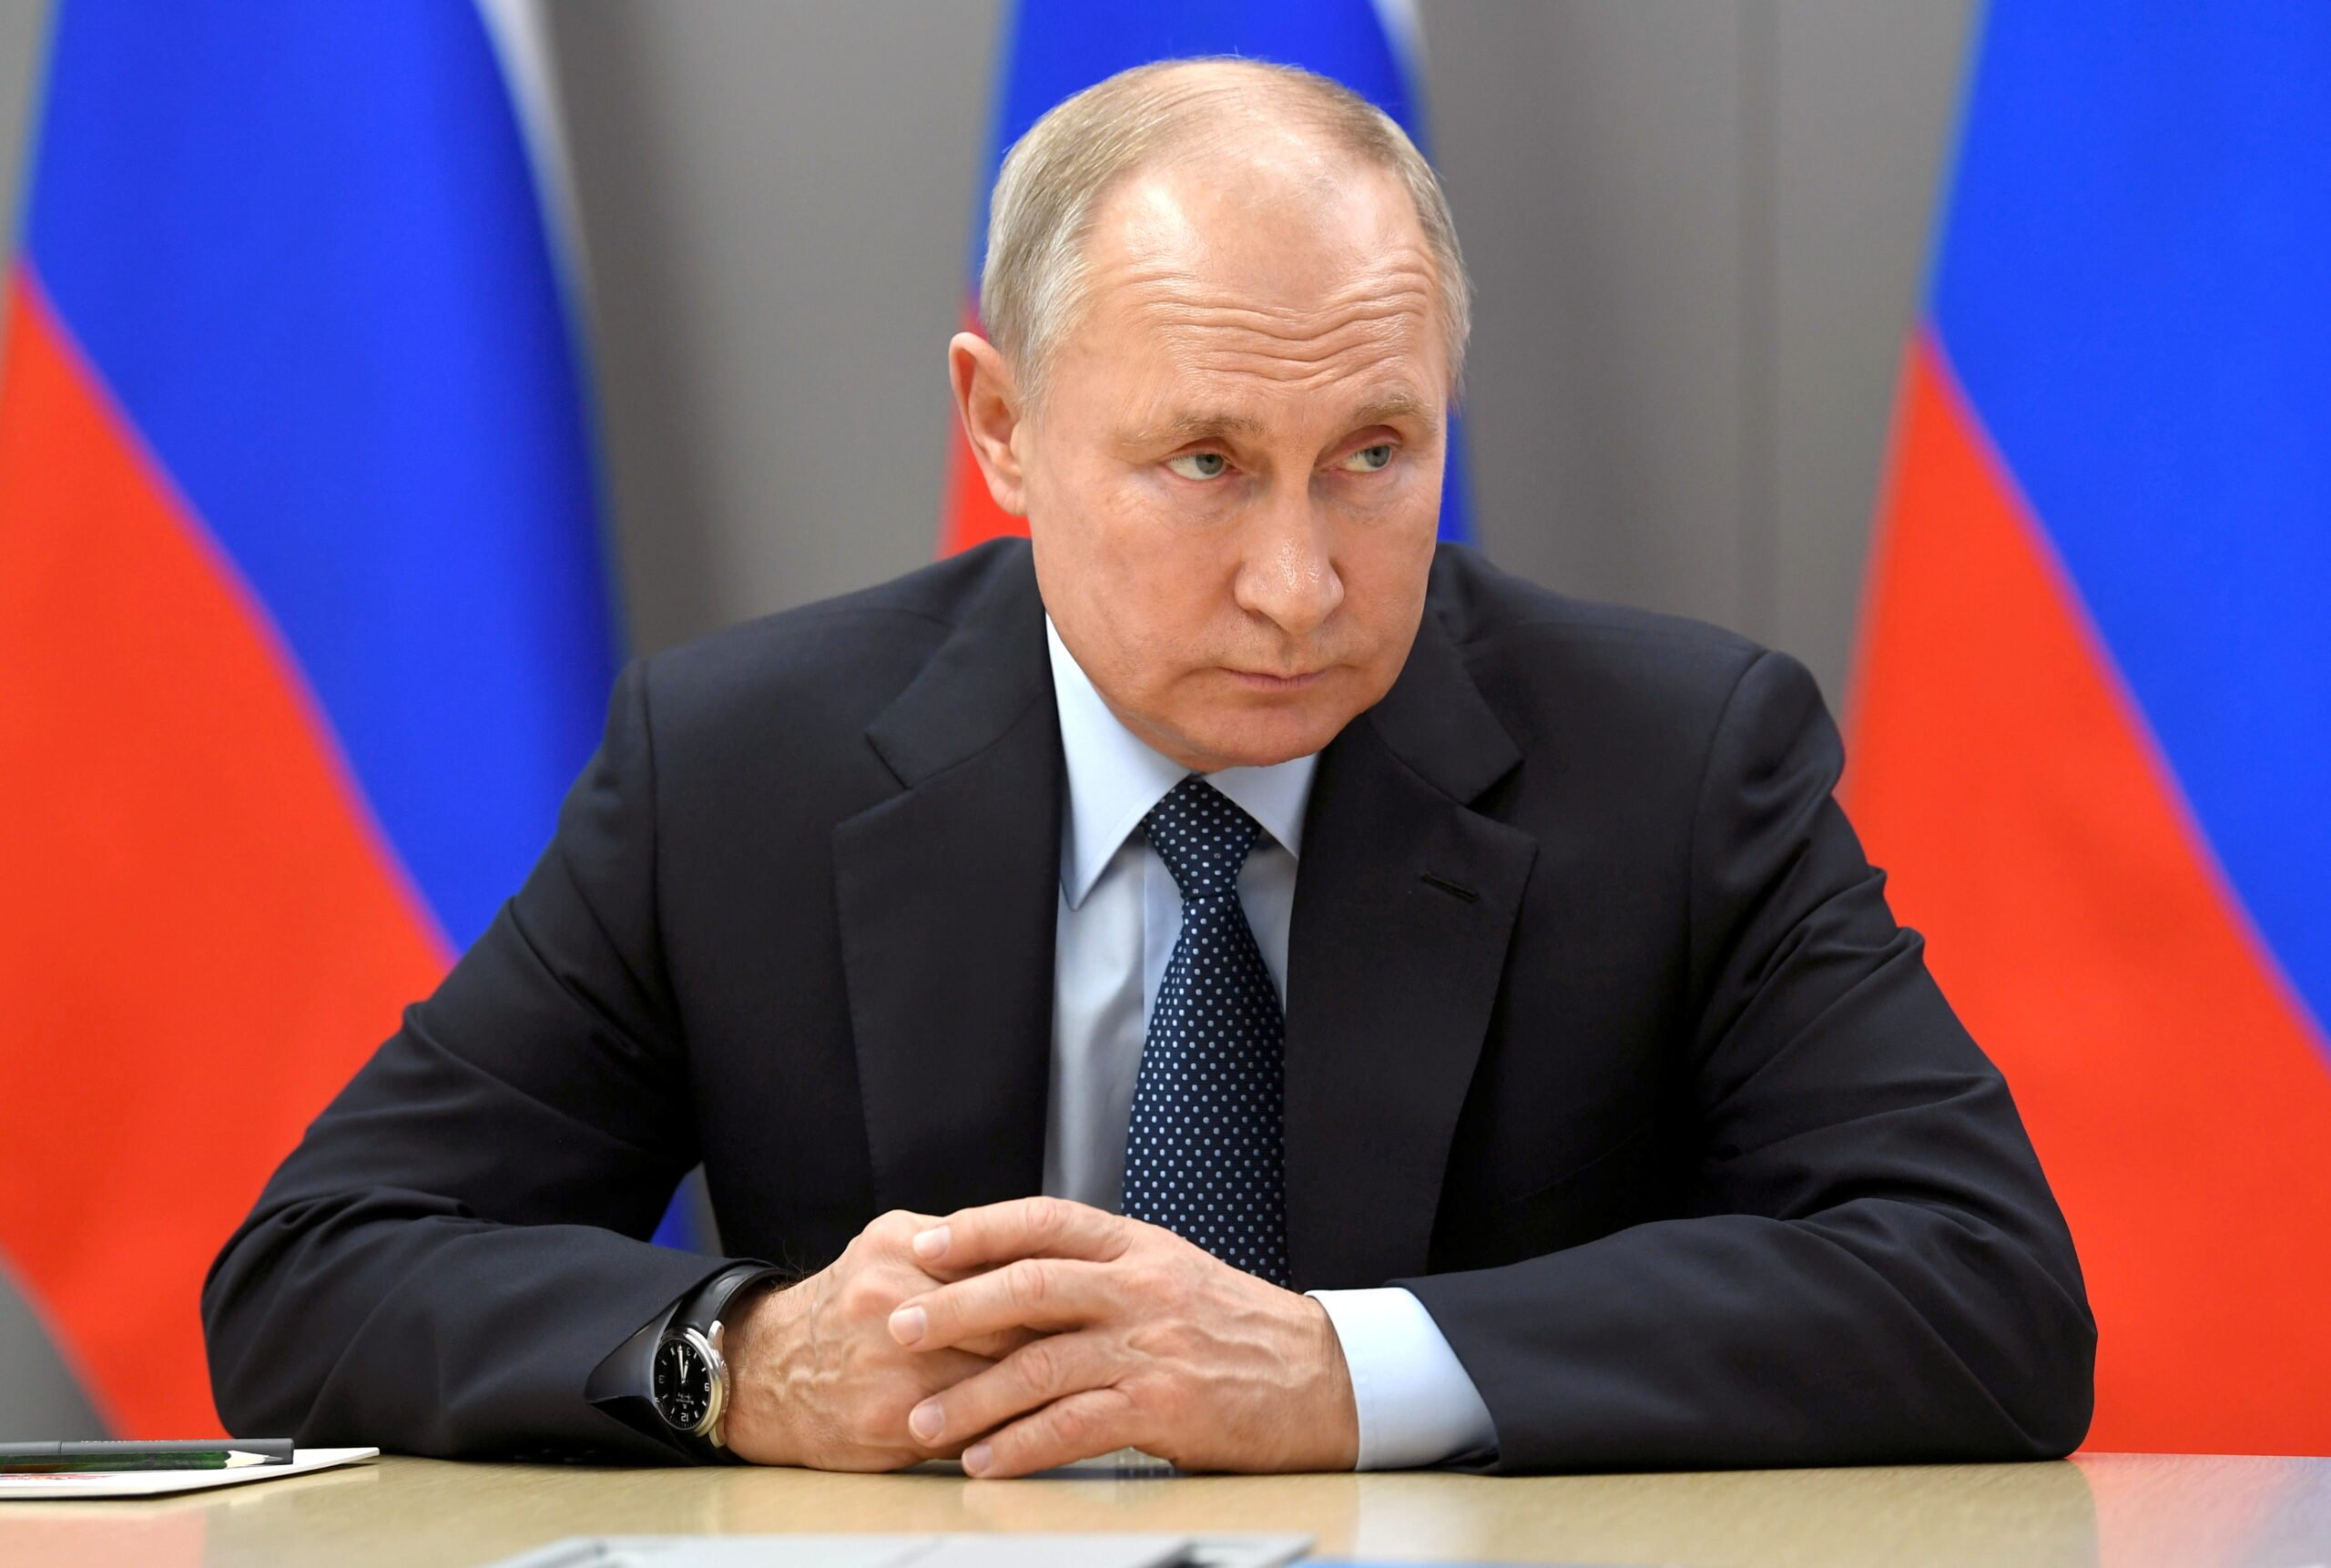 Το Κρεμλίνο λέει ότι ο Πούτιν είναι έτοιμος για διάλογο αν οι ΗΠΑ επιθυμούν